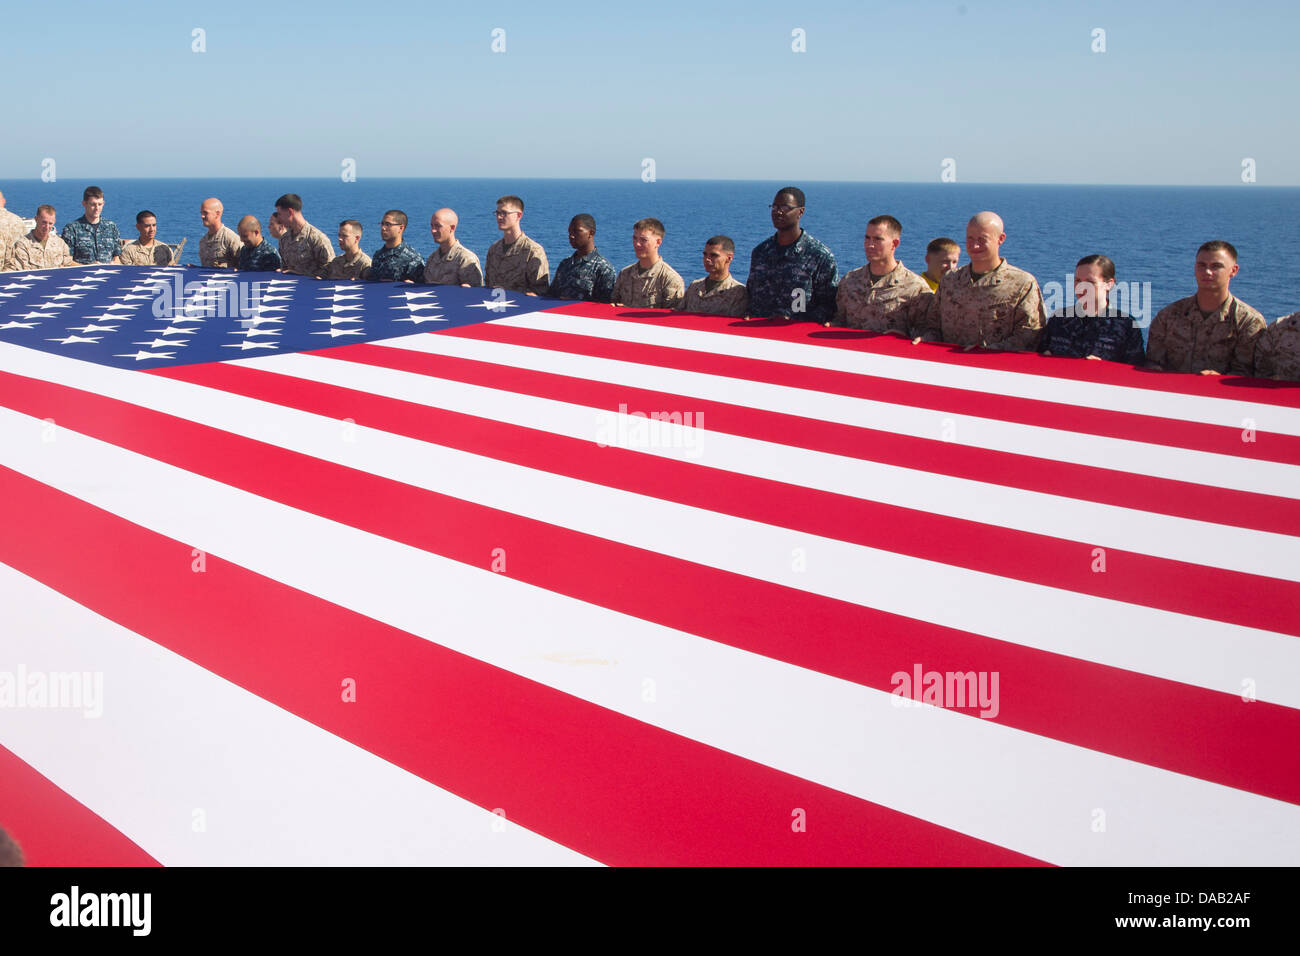 Marinai e Marines visualizzare il ensign nazionale in onore del giorno di indipendenza a bordo dell'assalto anfibio nave USS Kearsarge (LHD 3). Kearsarge è l'ammiraglia per il Kearsarge Amphibious pronto il gruppo e con la avviato 26 Marine Expeditionary Unit Foto Stock